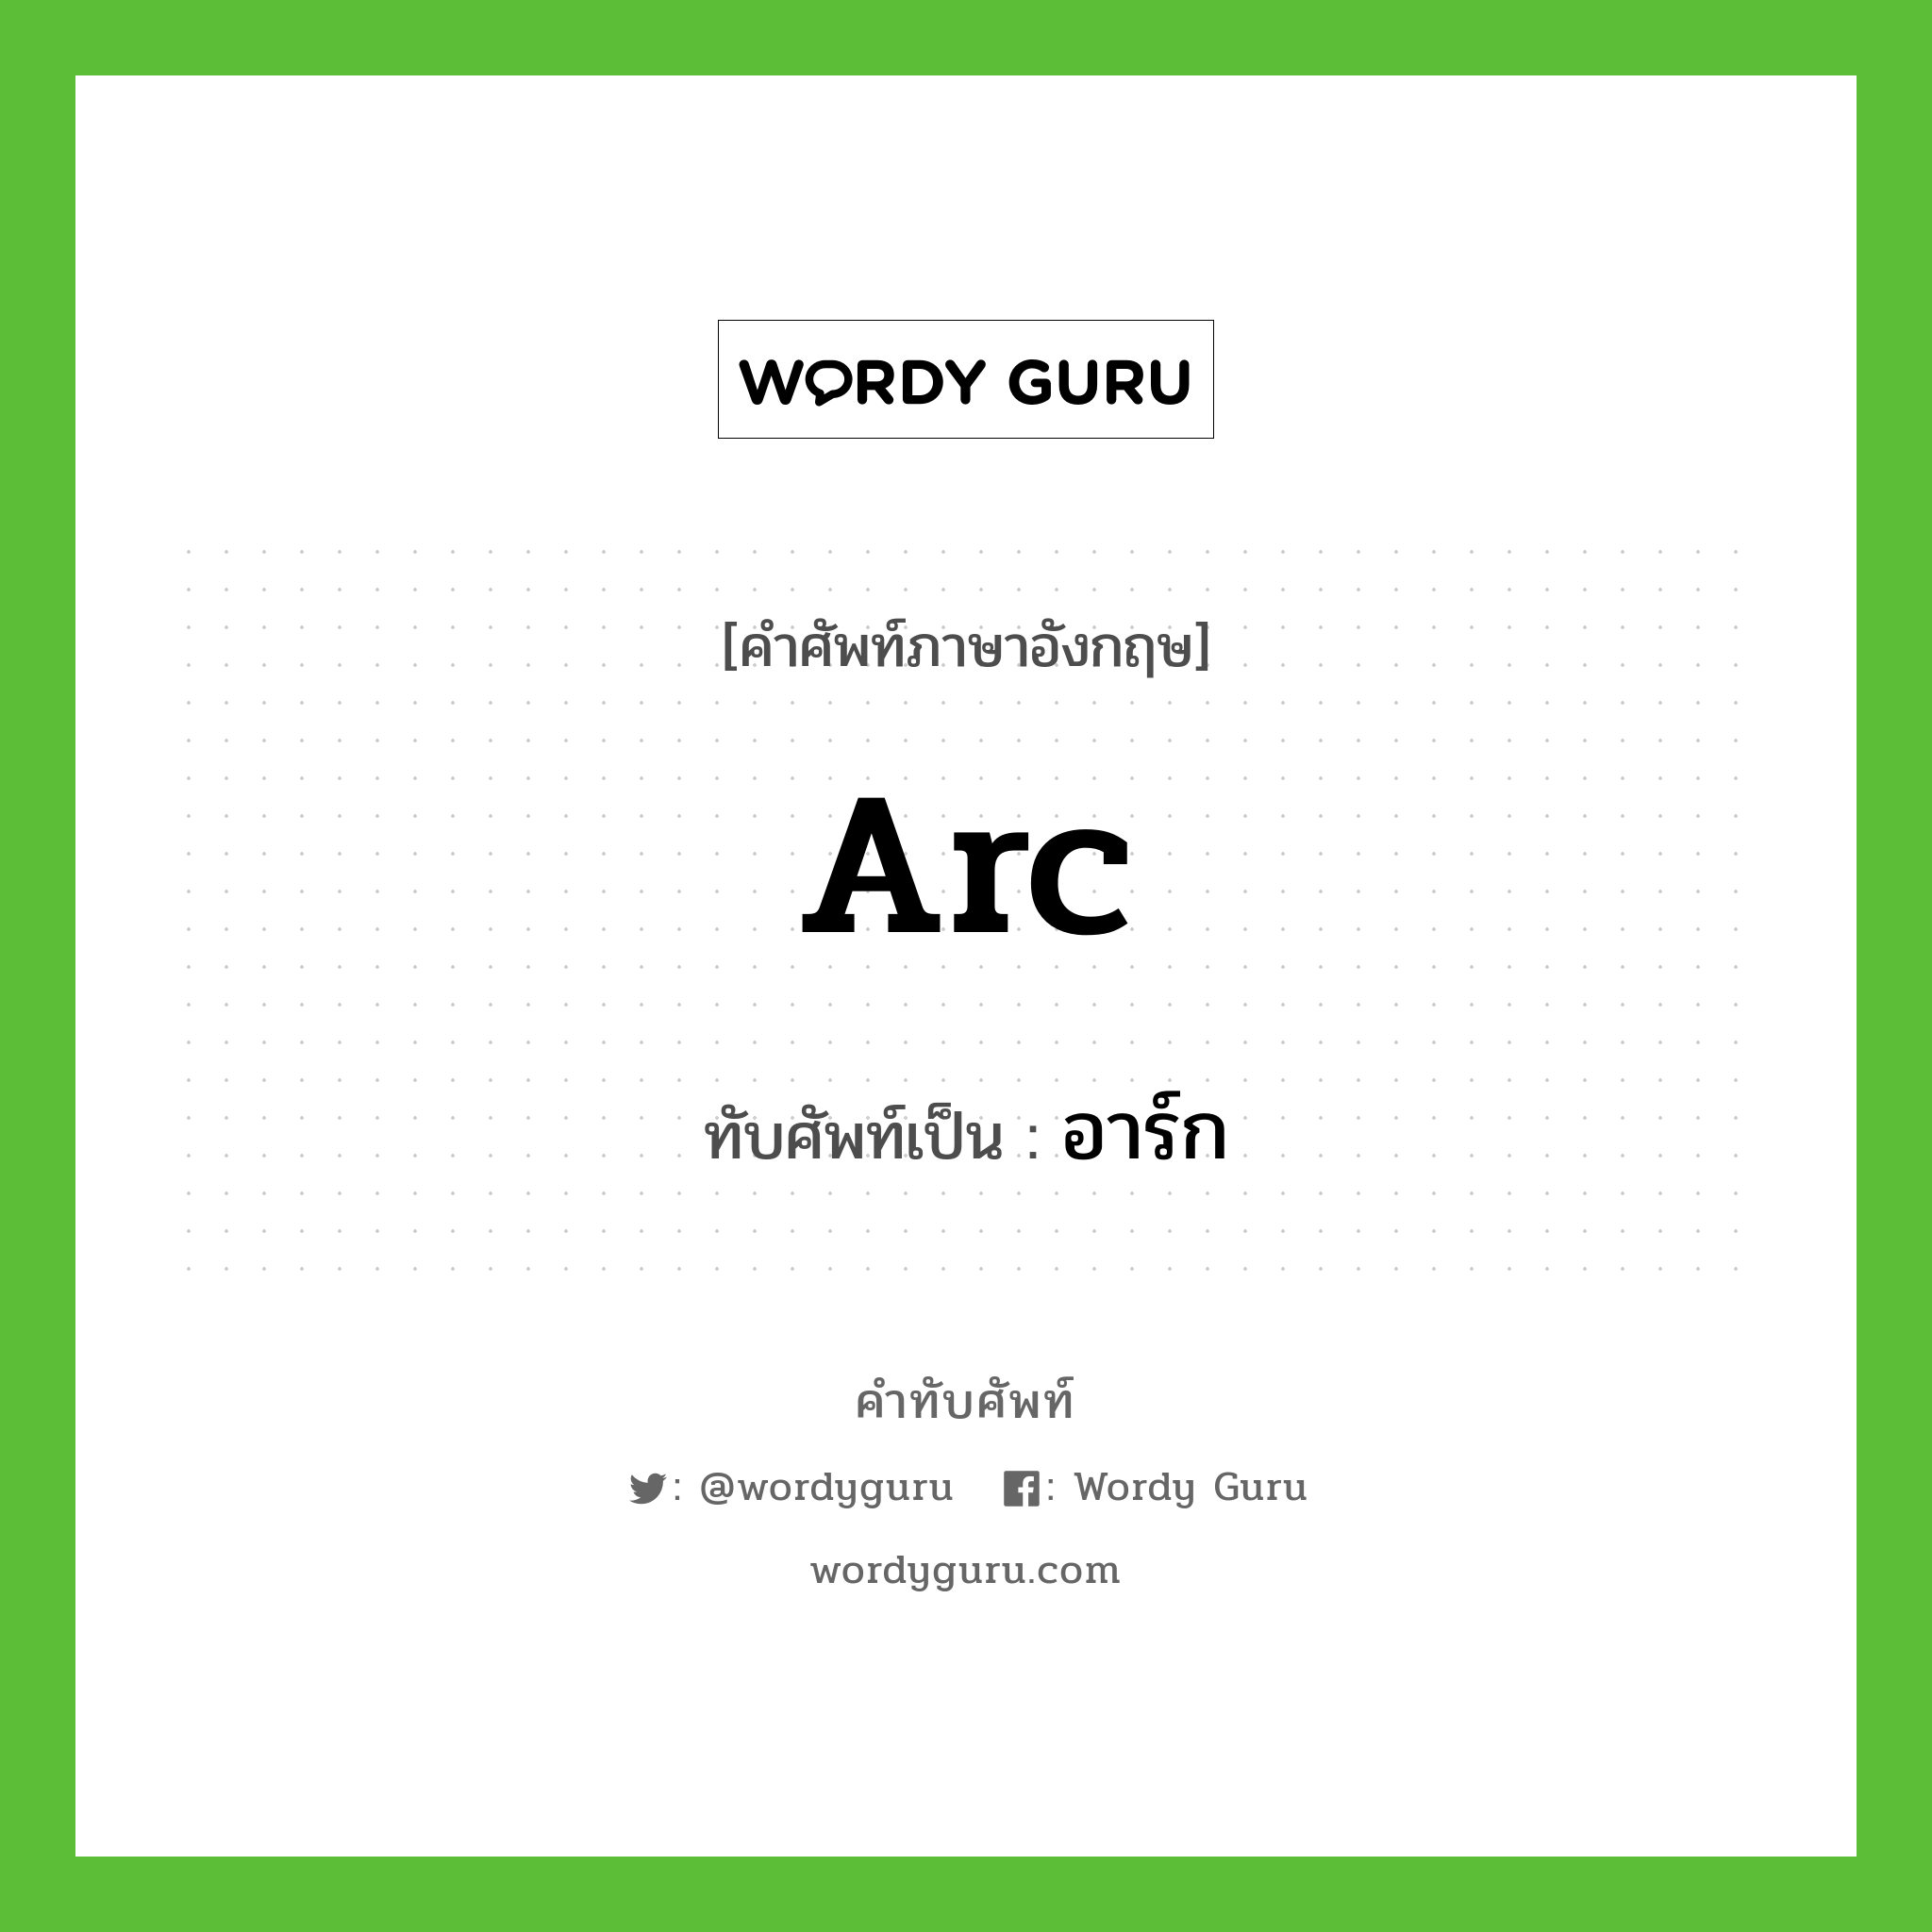 arc เขียนเป็นคำไทยว่าอะไร?, คำศัพท์ภาษาอังกฤษ arc ทับศัพท์เป็น อาร์ก